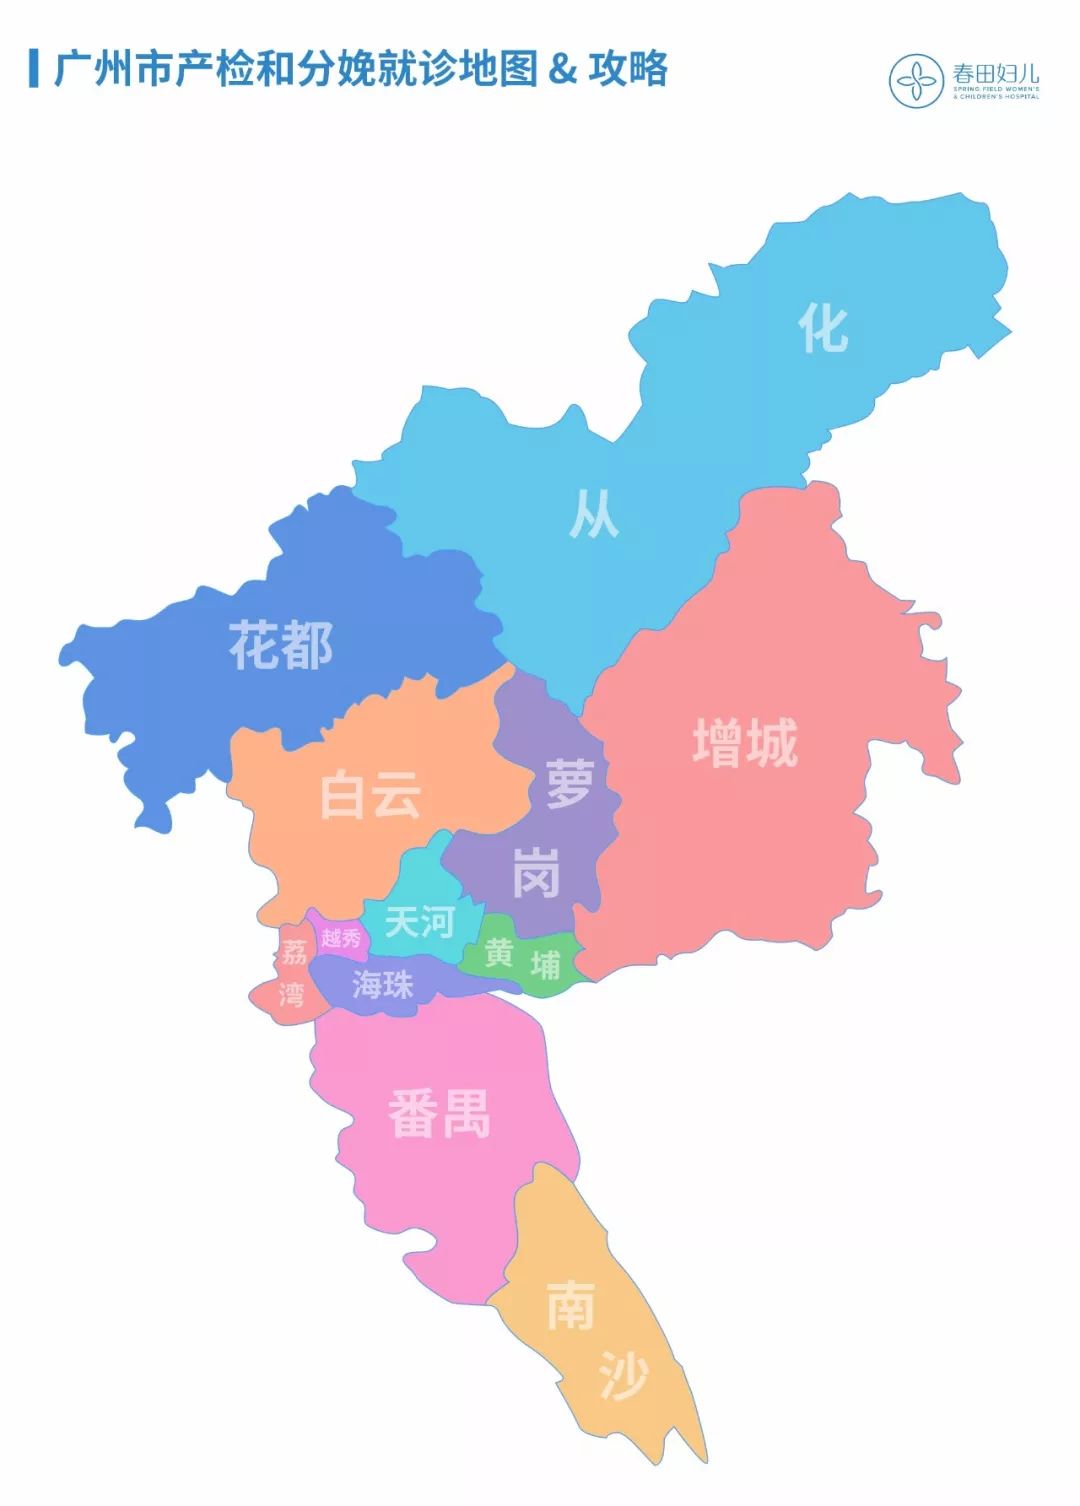 这个地图是对广州新冠肺炎的定点和非定点医院进行分类整理,告知各家